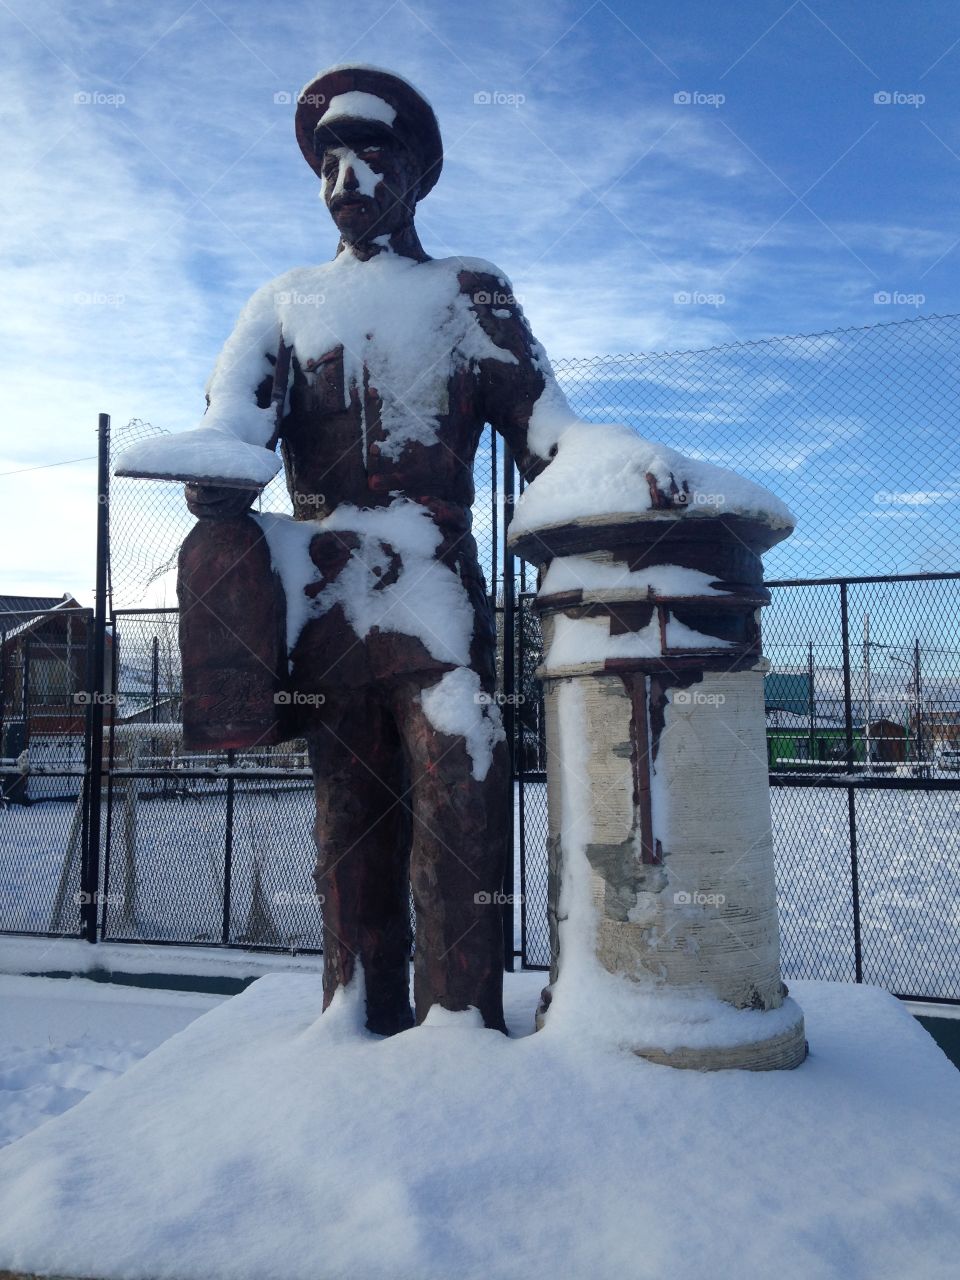 Postman statue frozen